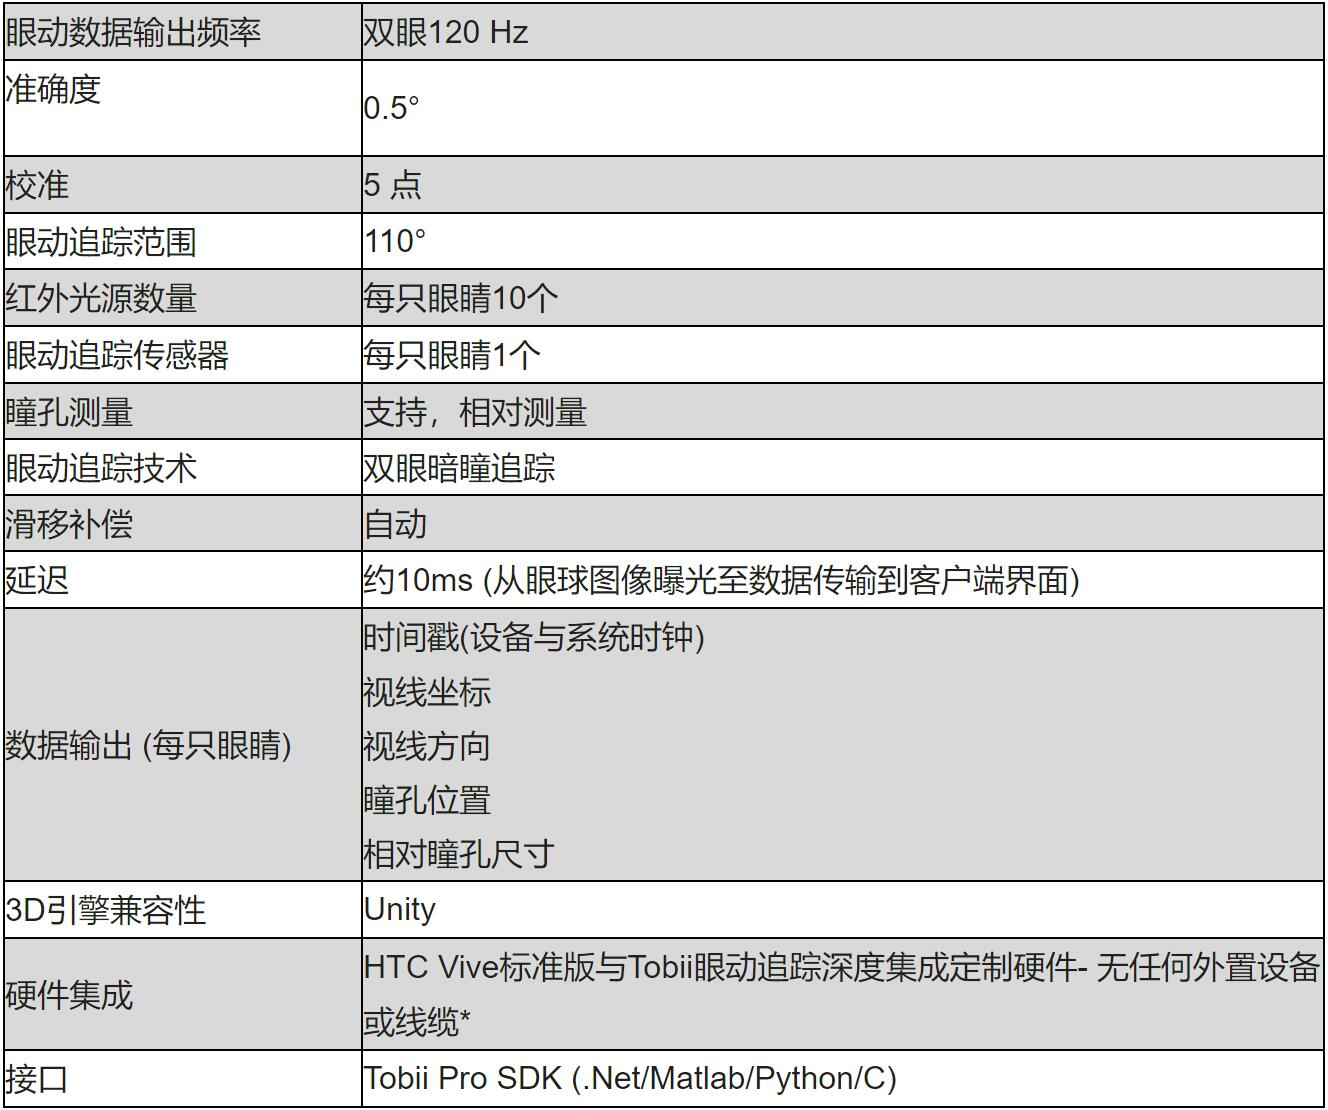 环境模拟可穿戴眼动仪案例_便携式记录-北京津发科技股份有限公司